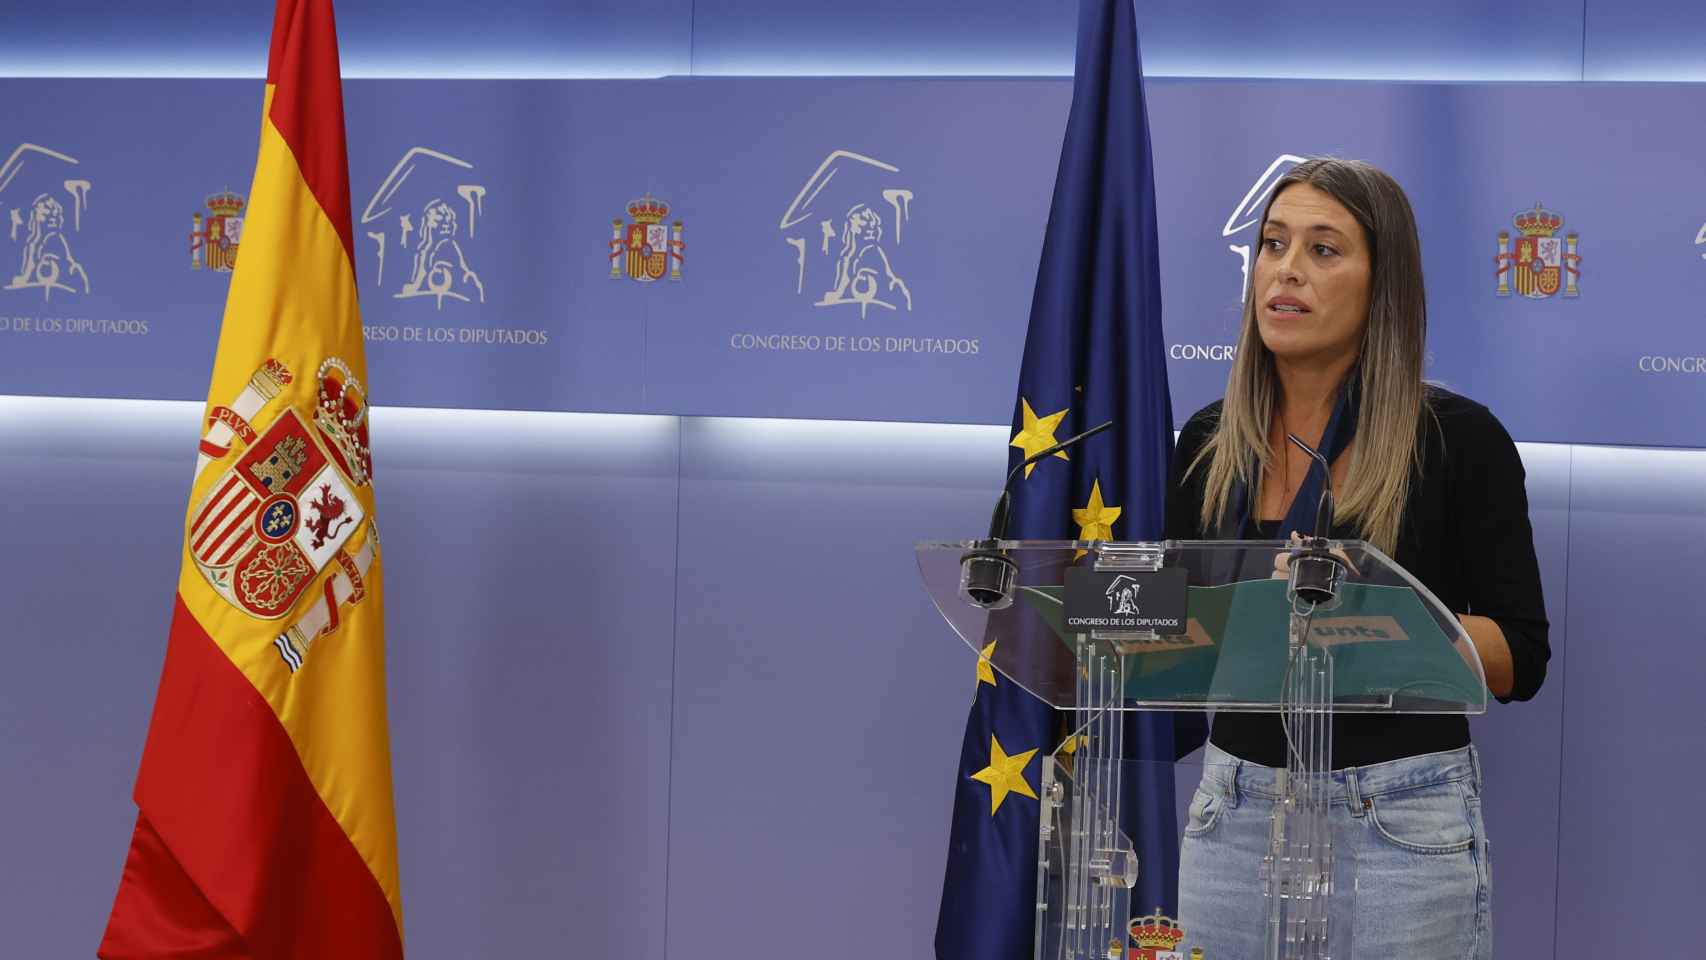 La diputada Miríam Nogueras junto a la bandera de su país y la de la UE.